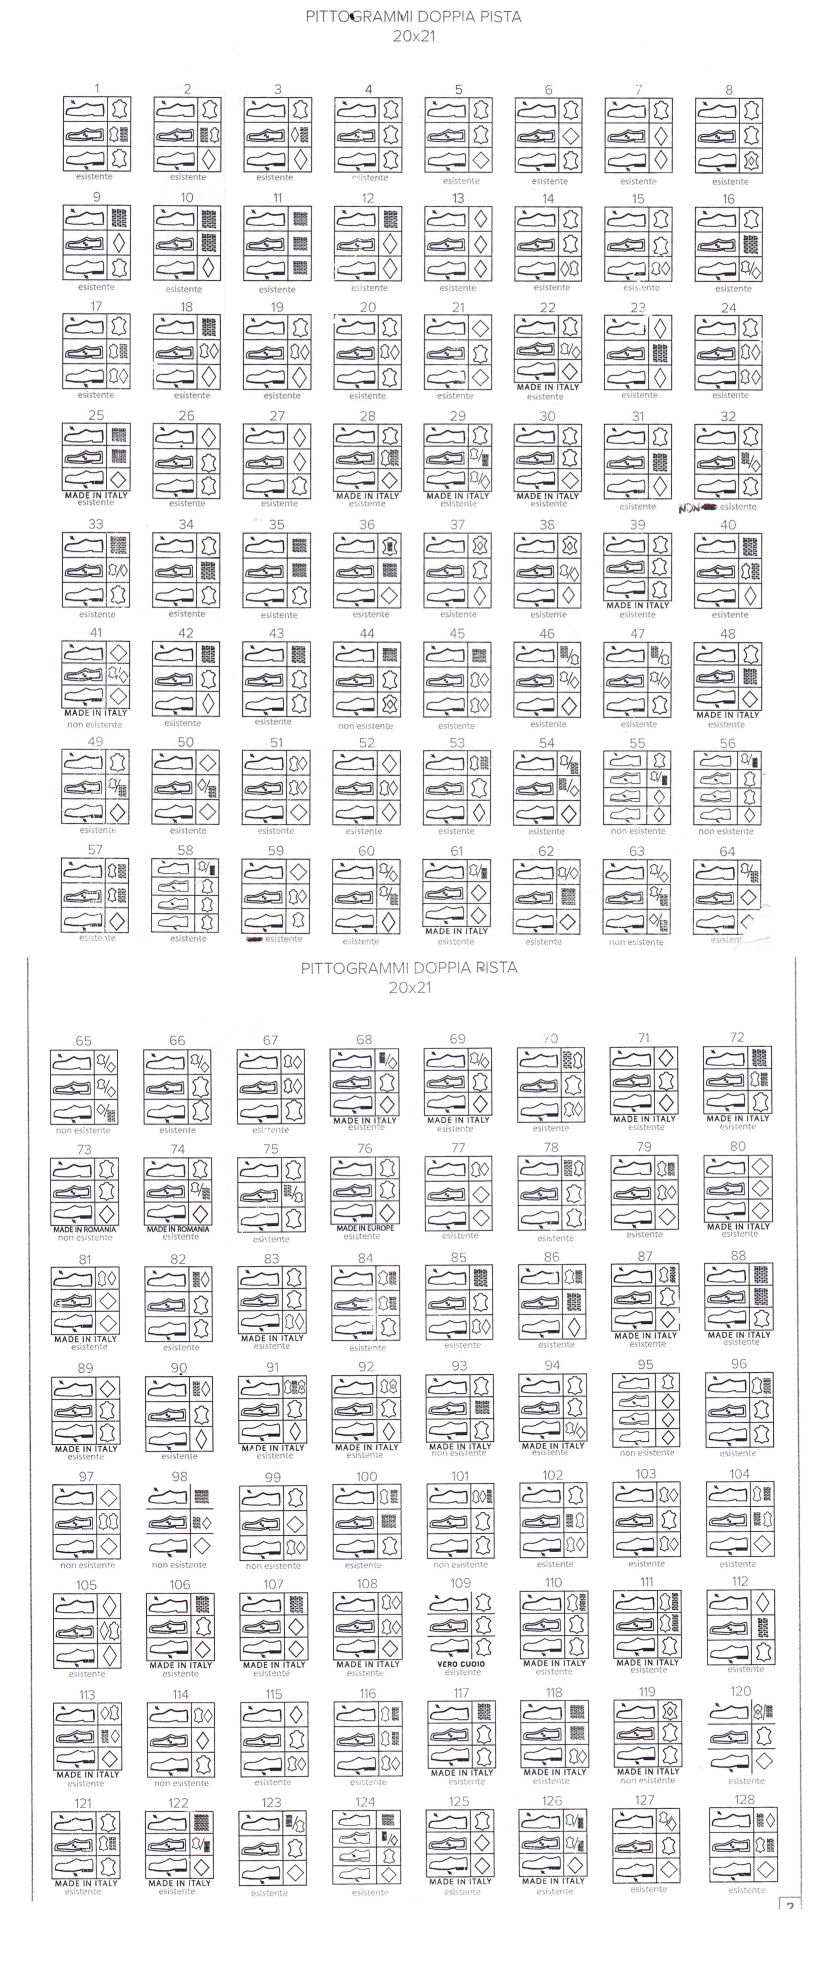 Cartella tipologie pittogrammi grande pagina 1 